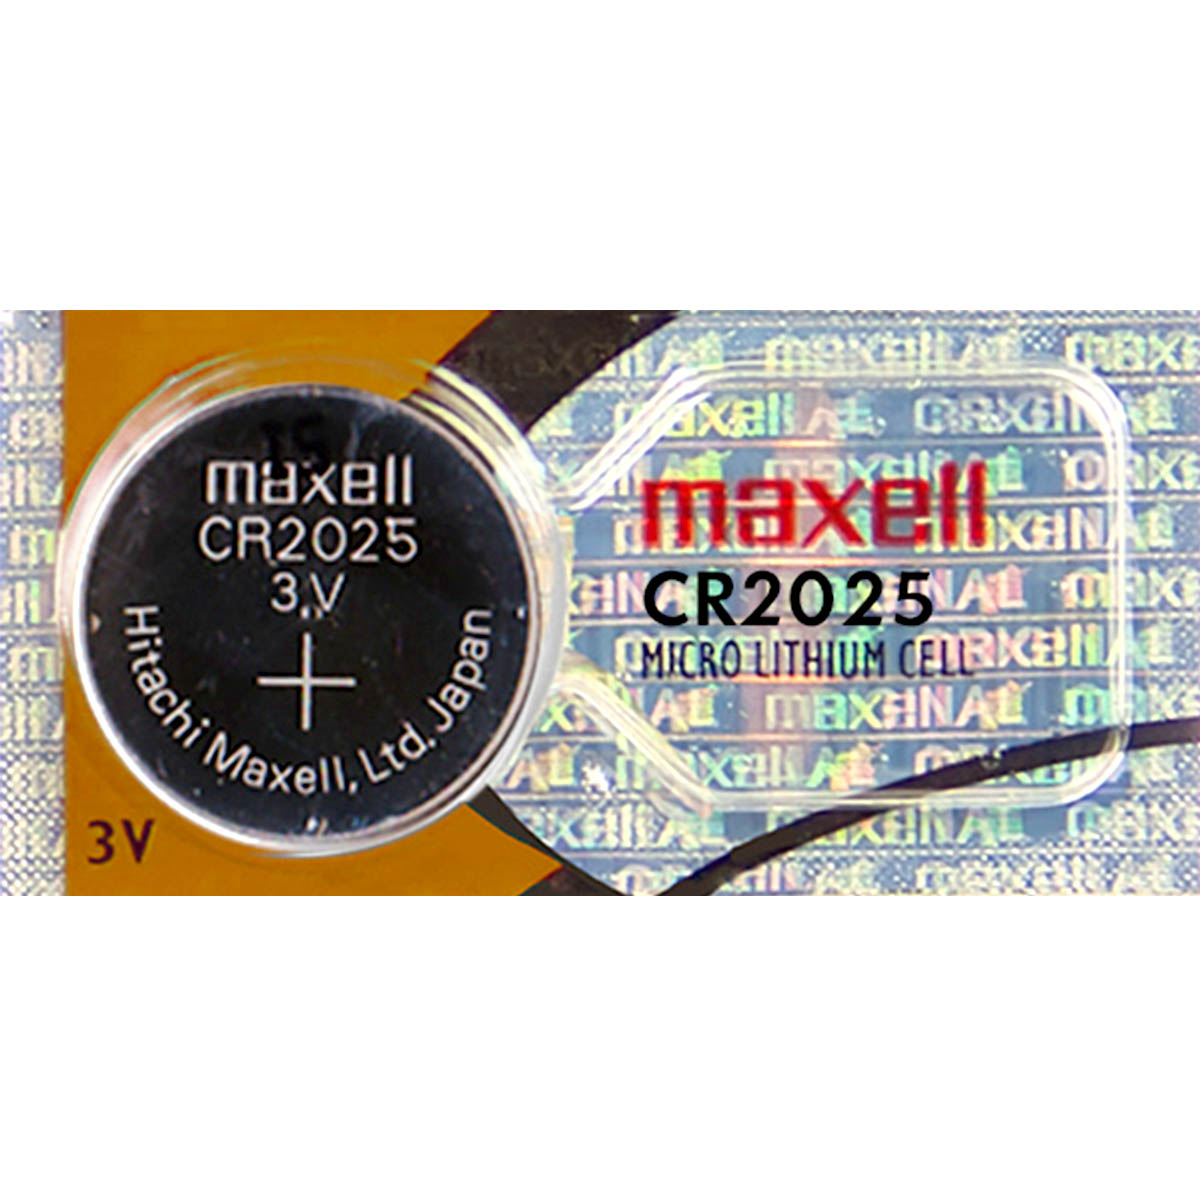 Maxell Cr2025 - 3V 5 Pack 